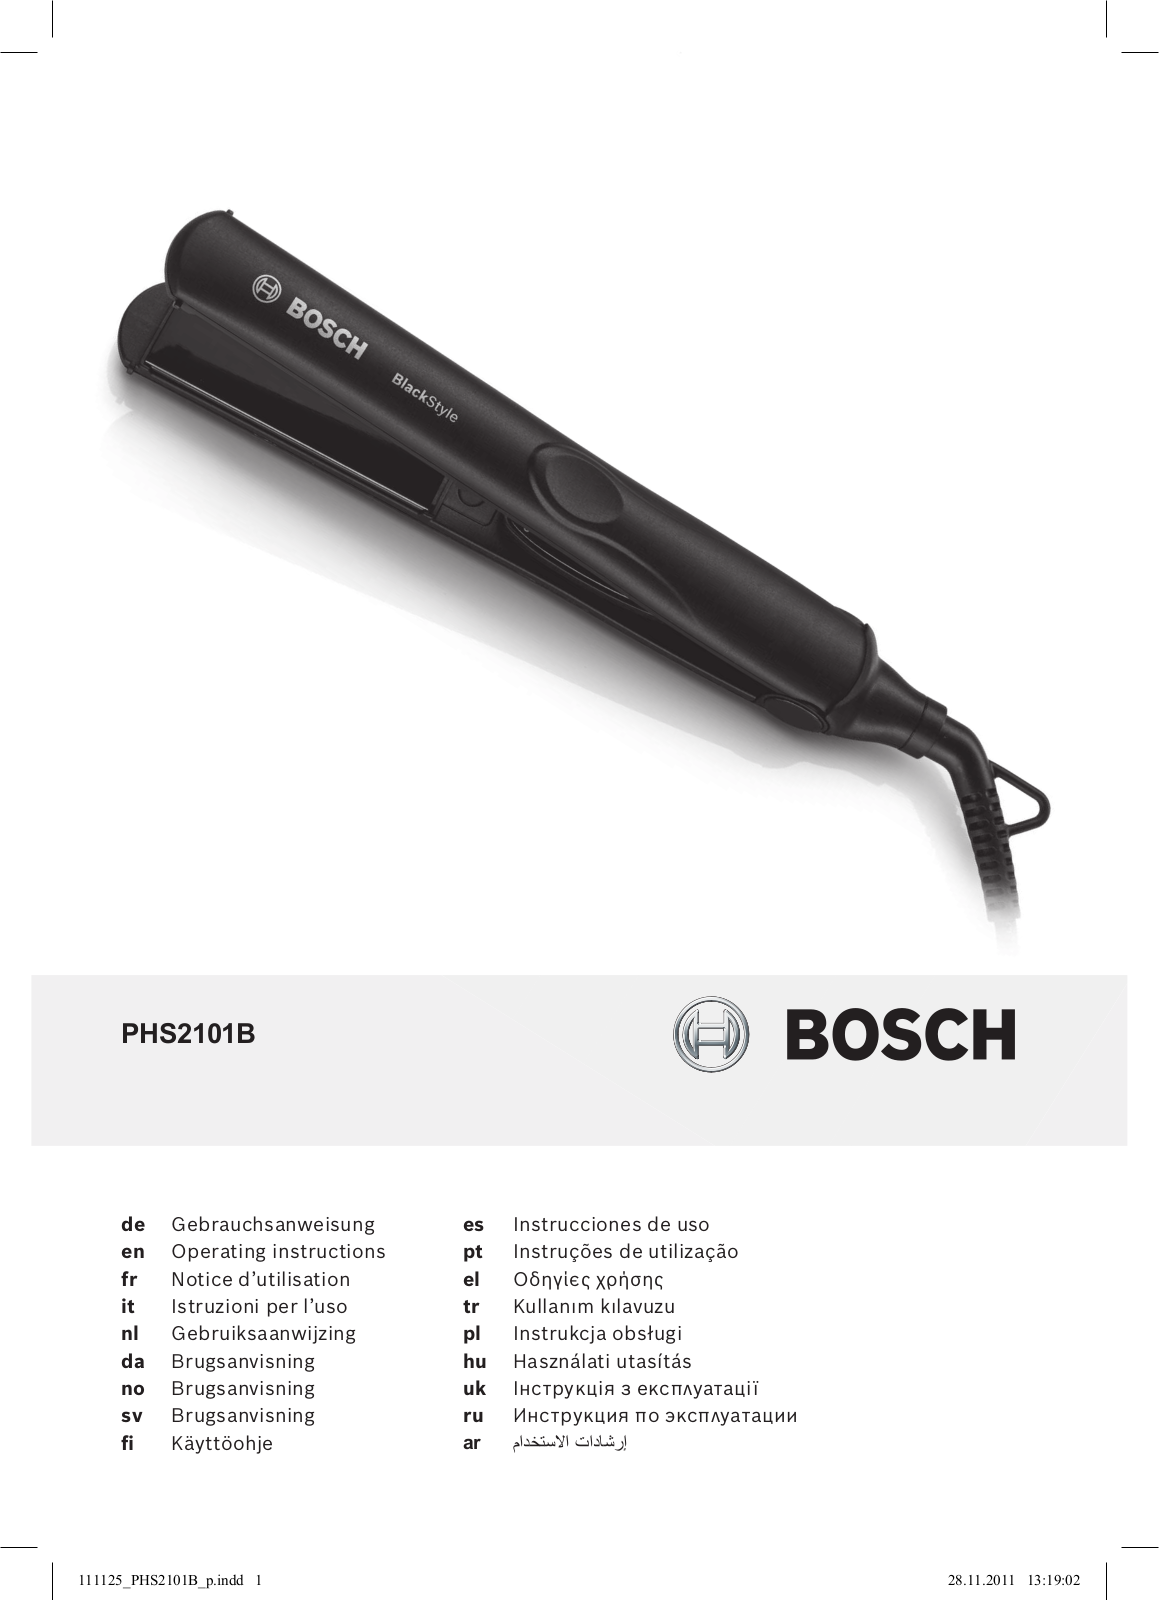 Bosch PHS 2101 b User Manual